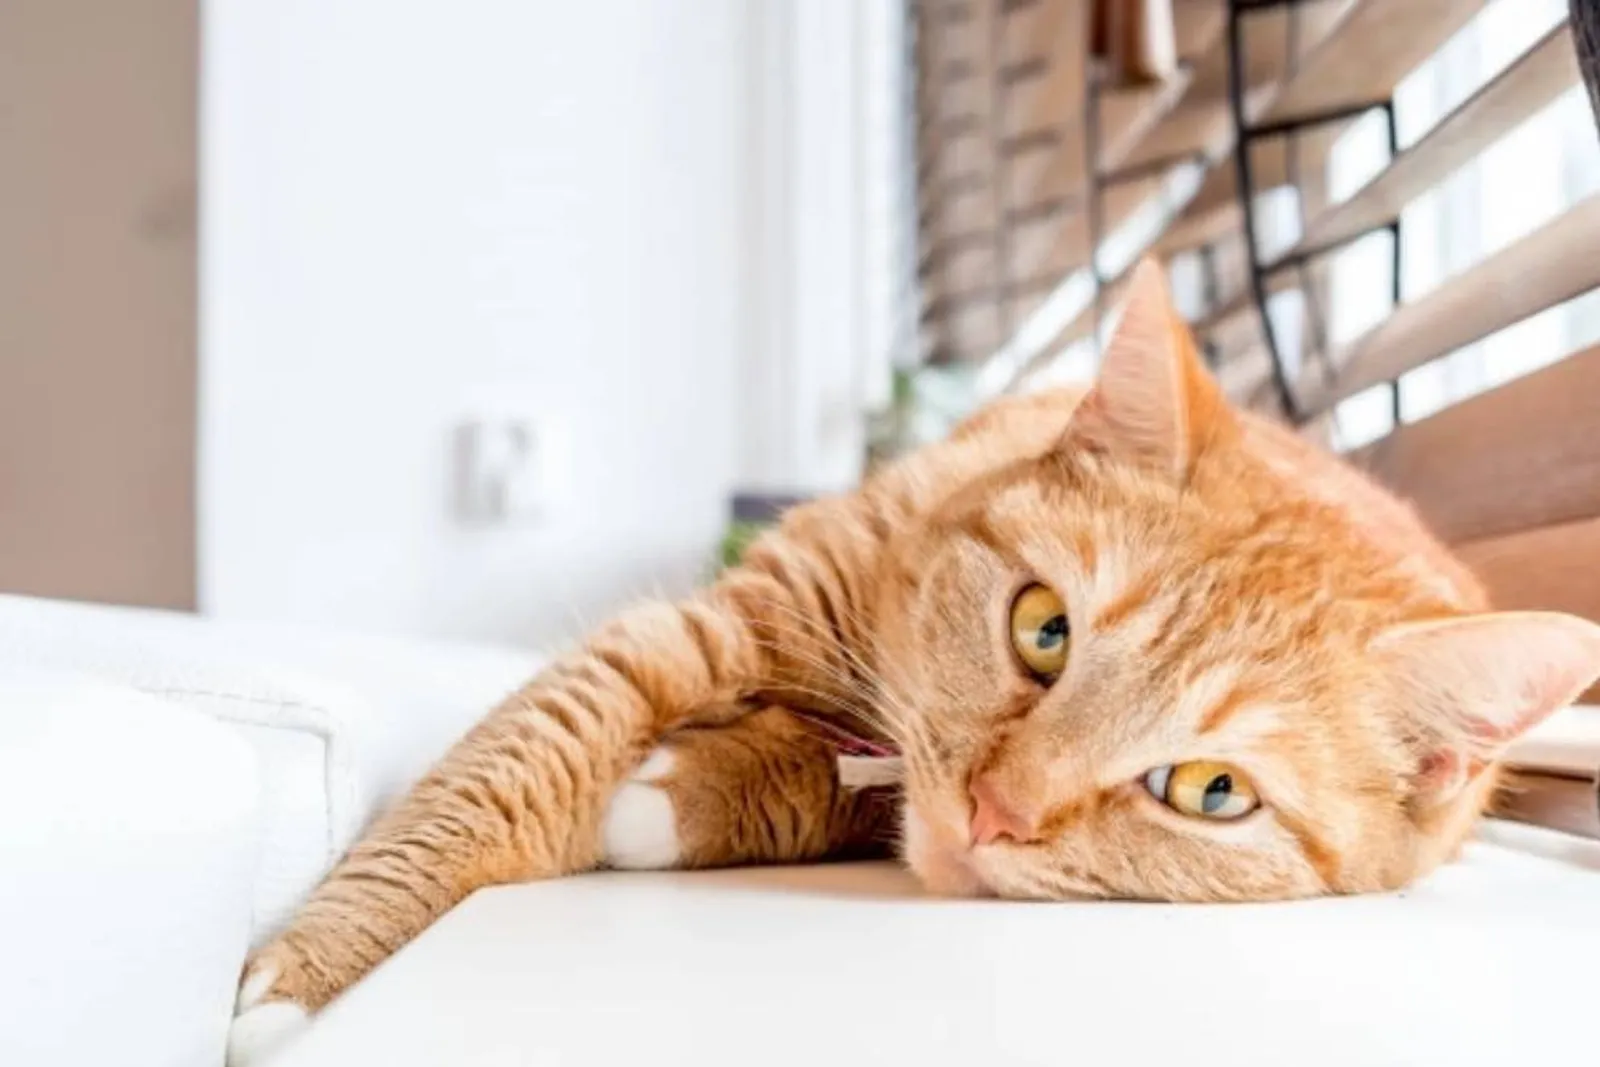 Awas Penyakit Menular! Ini 5 Cara Menghilangkan Jamur pada Kucing